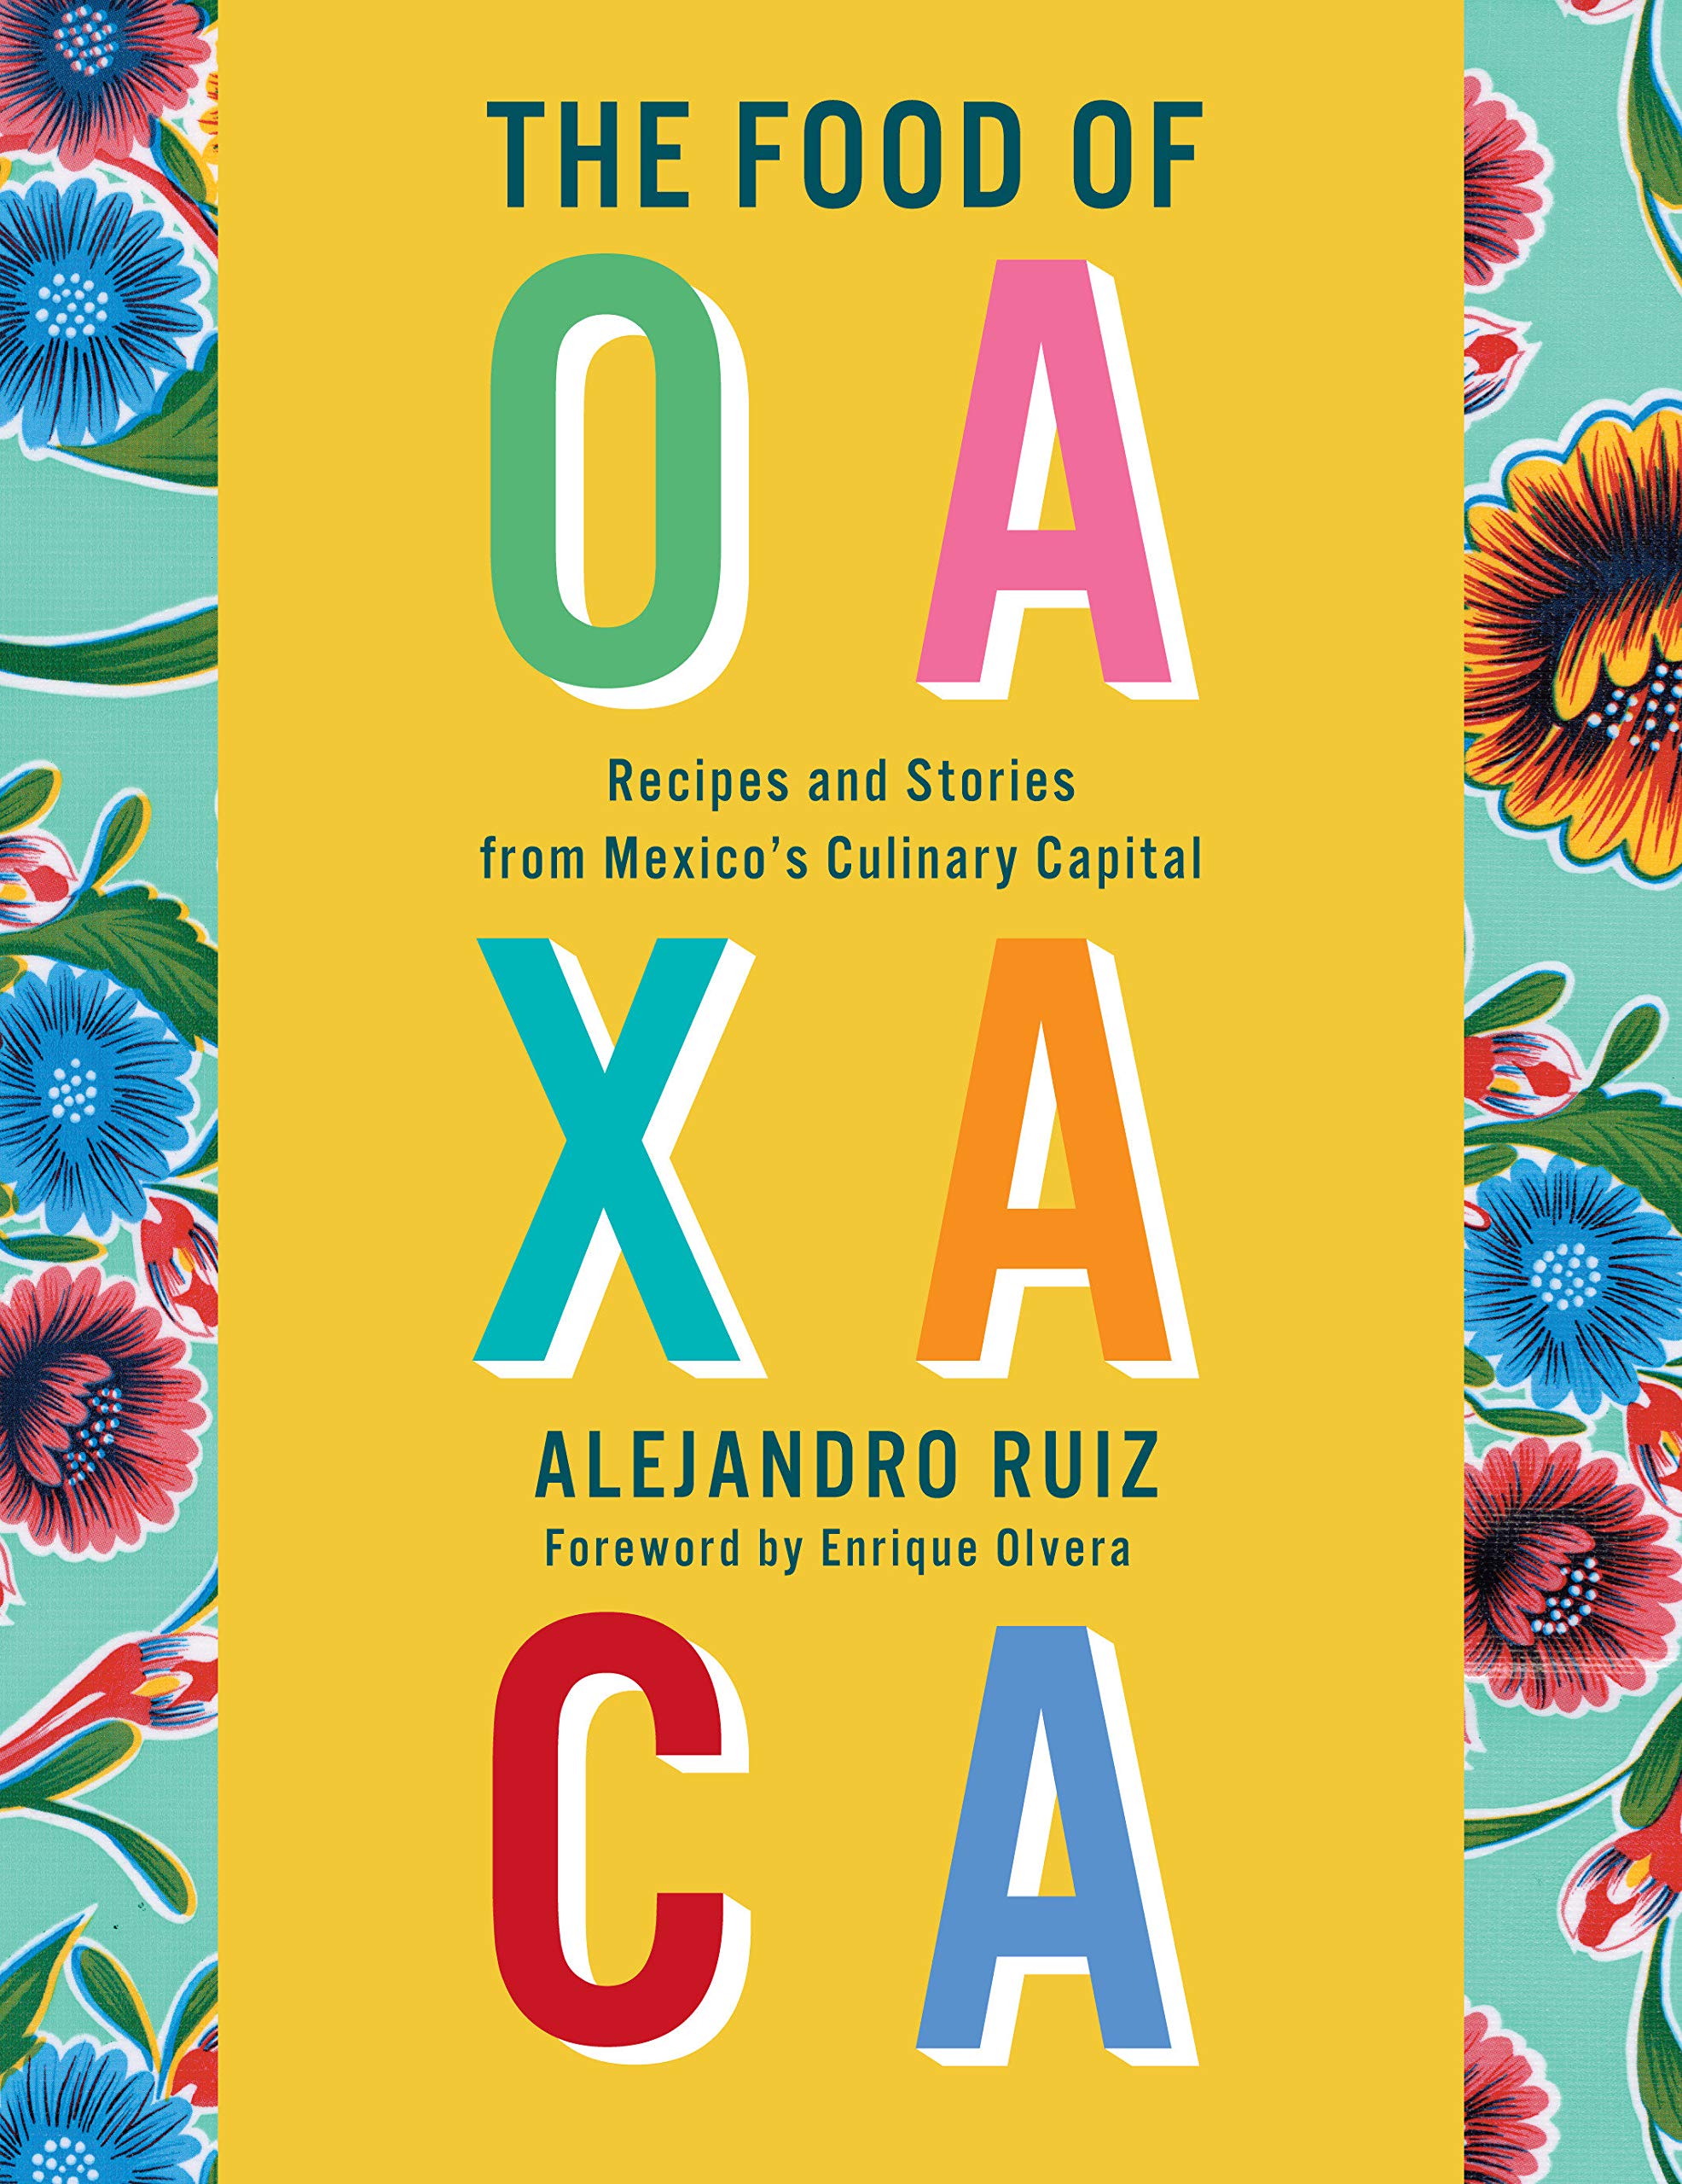 The Food of Oaxaca: Recipes and Stories from Mexico's Culinary Capital (Alejandro Ruiz)